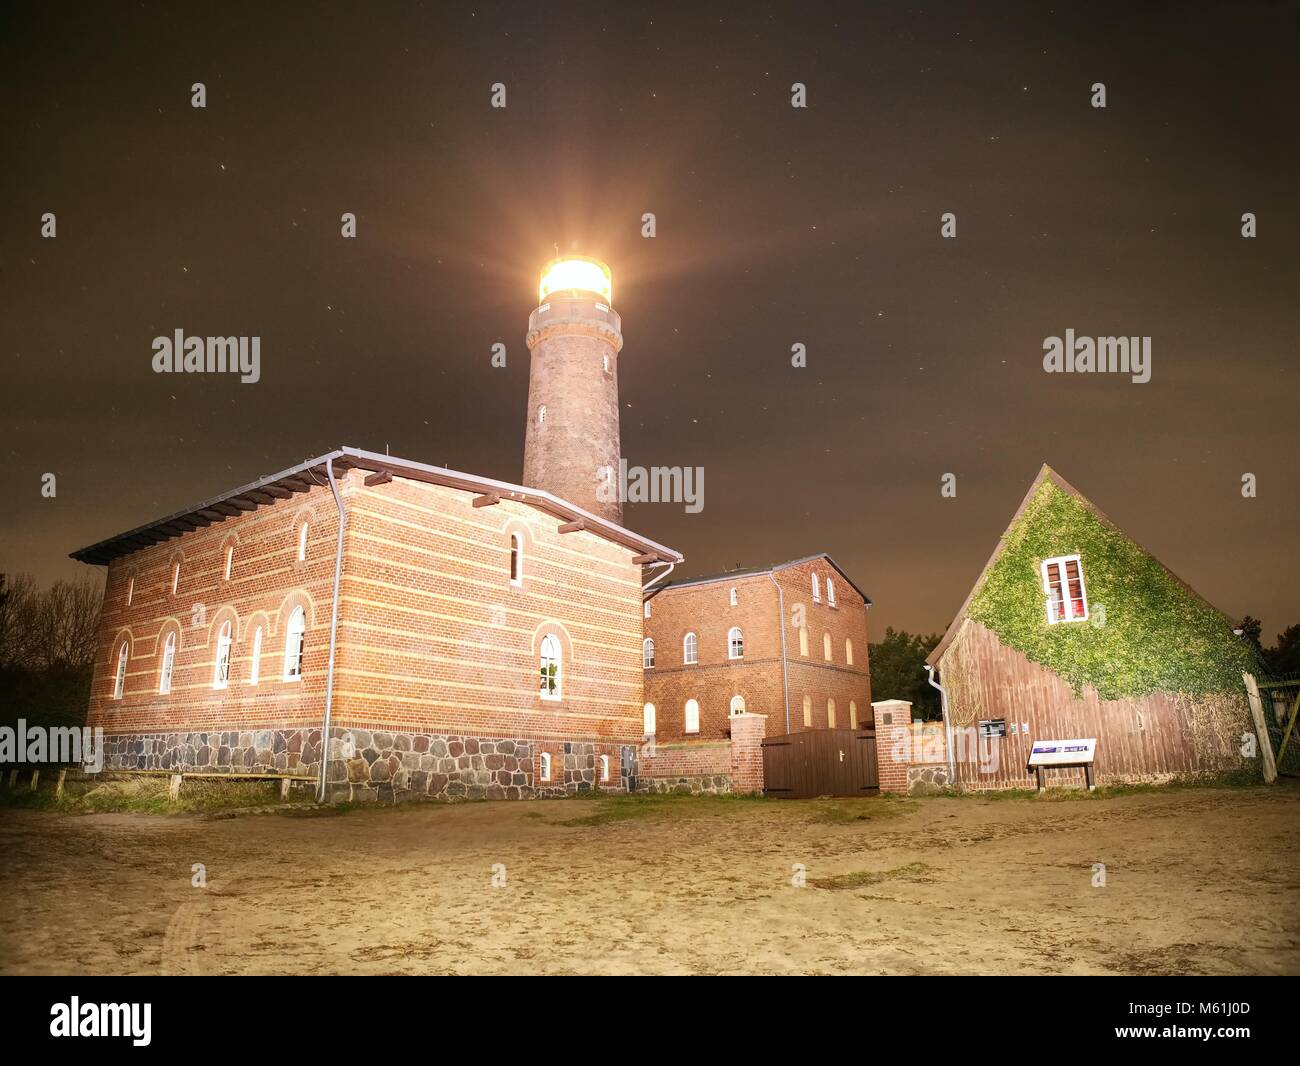 Leuchtturm Darßer Ort strahlt in der dunklen Nacht. Nationalpark bei Prerow, Ostsee, Mecklenburg-Vorpommern, Deutschland Stockfoto